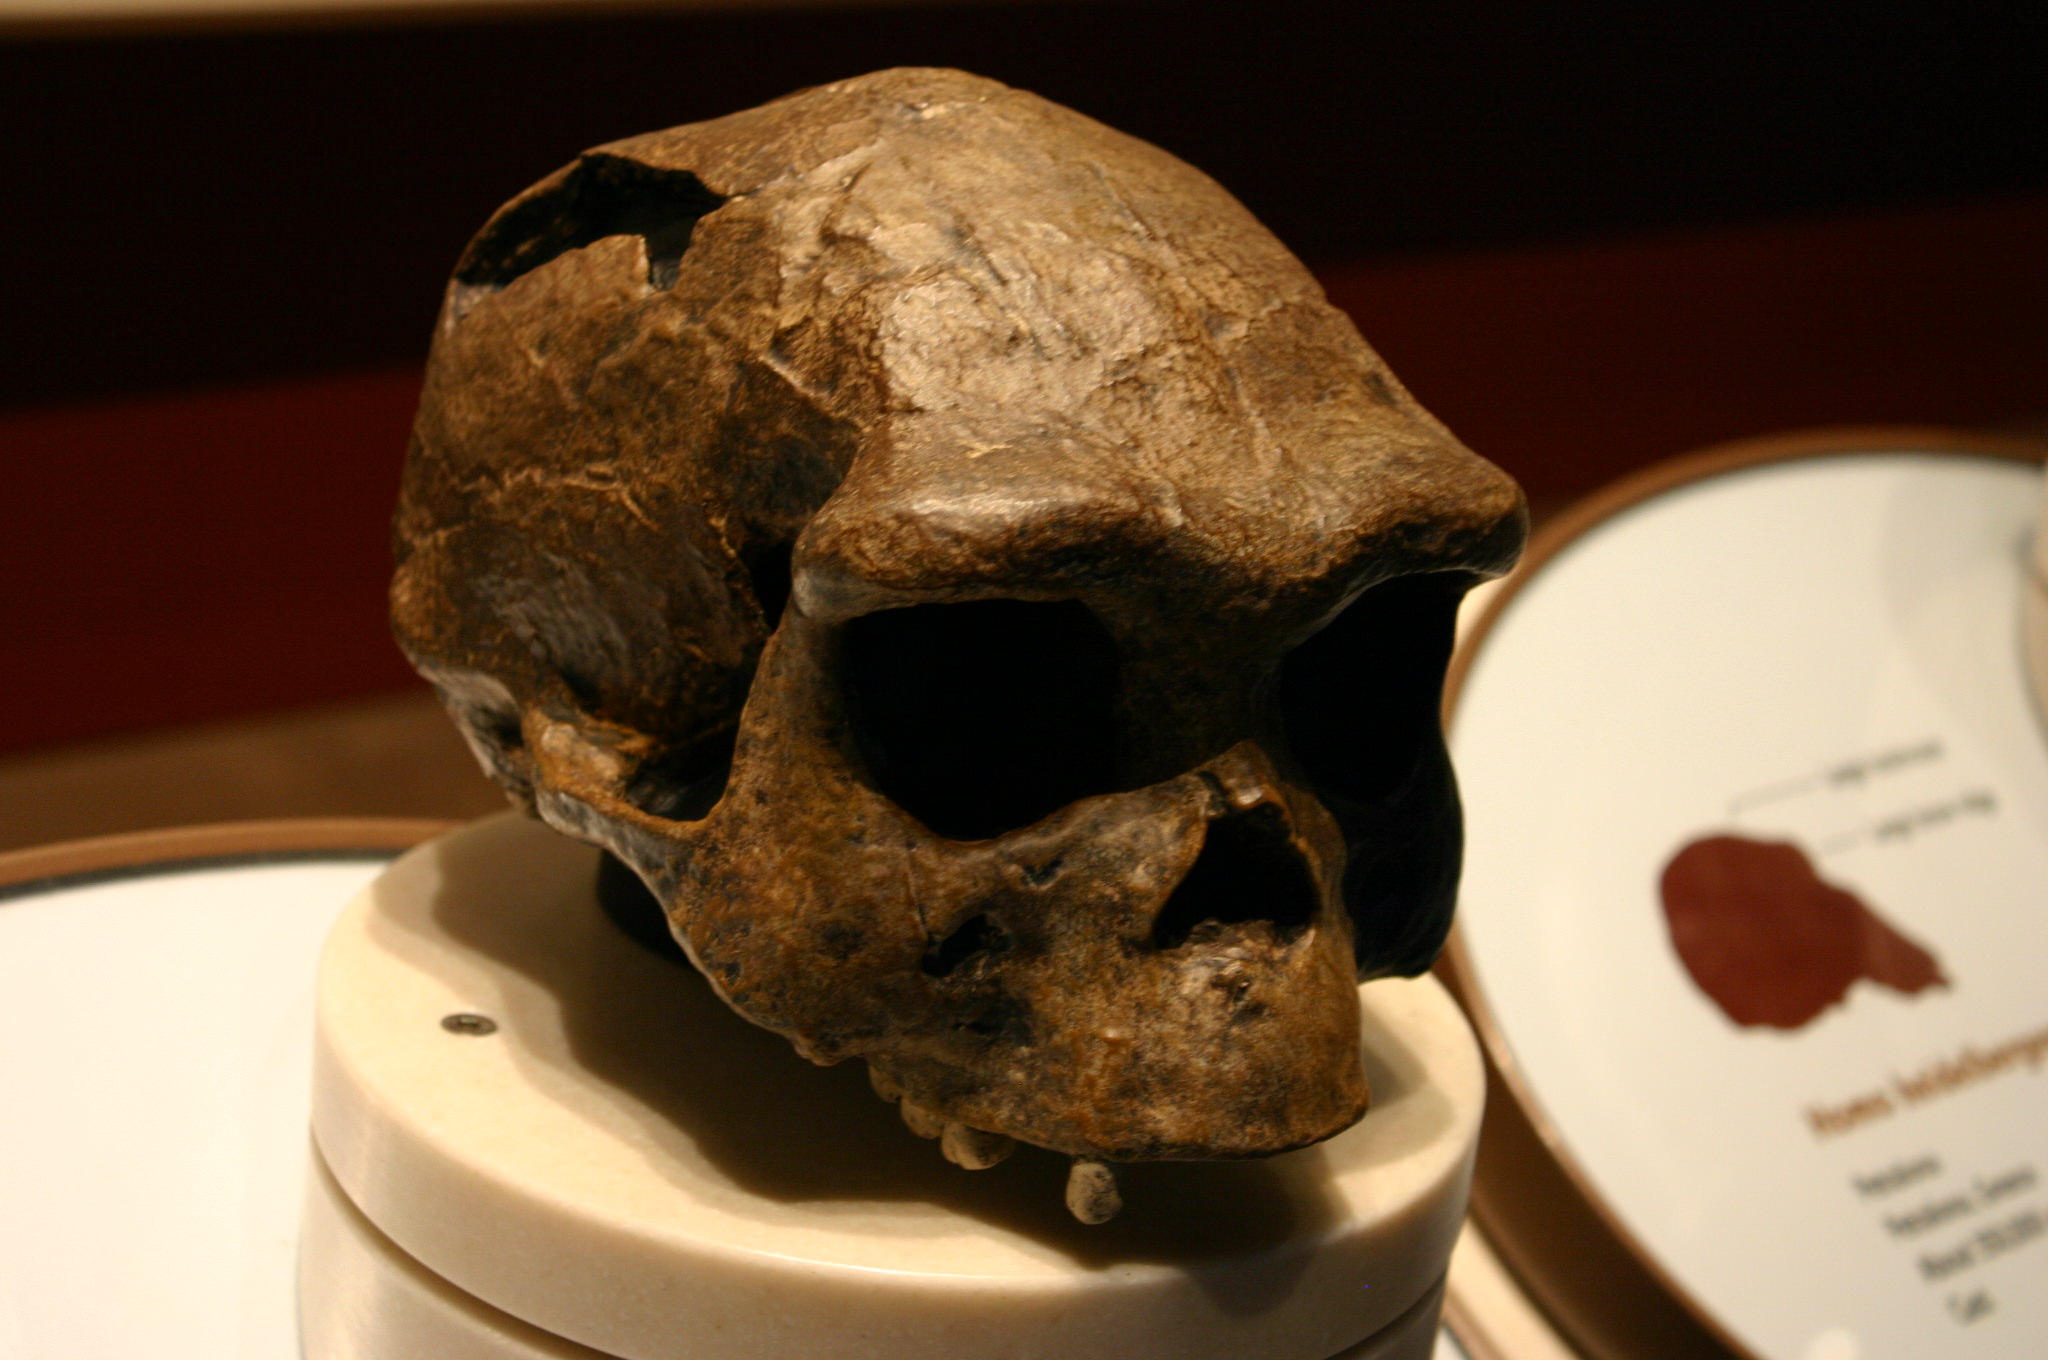 Sima de los Huesos 동굴의 해골은 Homo heidelbergensis로 알려진 초기 인류에게 할당되었습니다. 그러나 연구자들은 골격 구조가 네안데르탈인의 구조와 유사하다고 말합니다. 일부에서는 Sima de los Huesos인이 실제로 Homo heidelbergensis의 대표자가 아니라 네안데르탈인이었다고 말합니다.